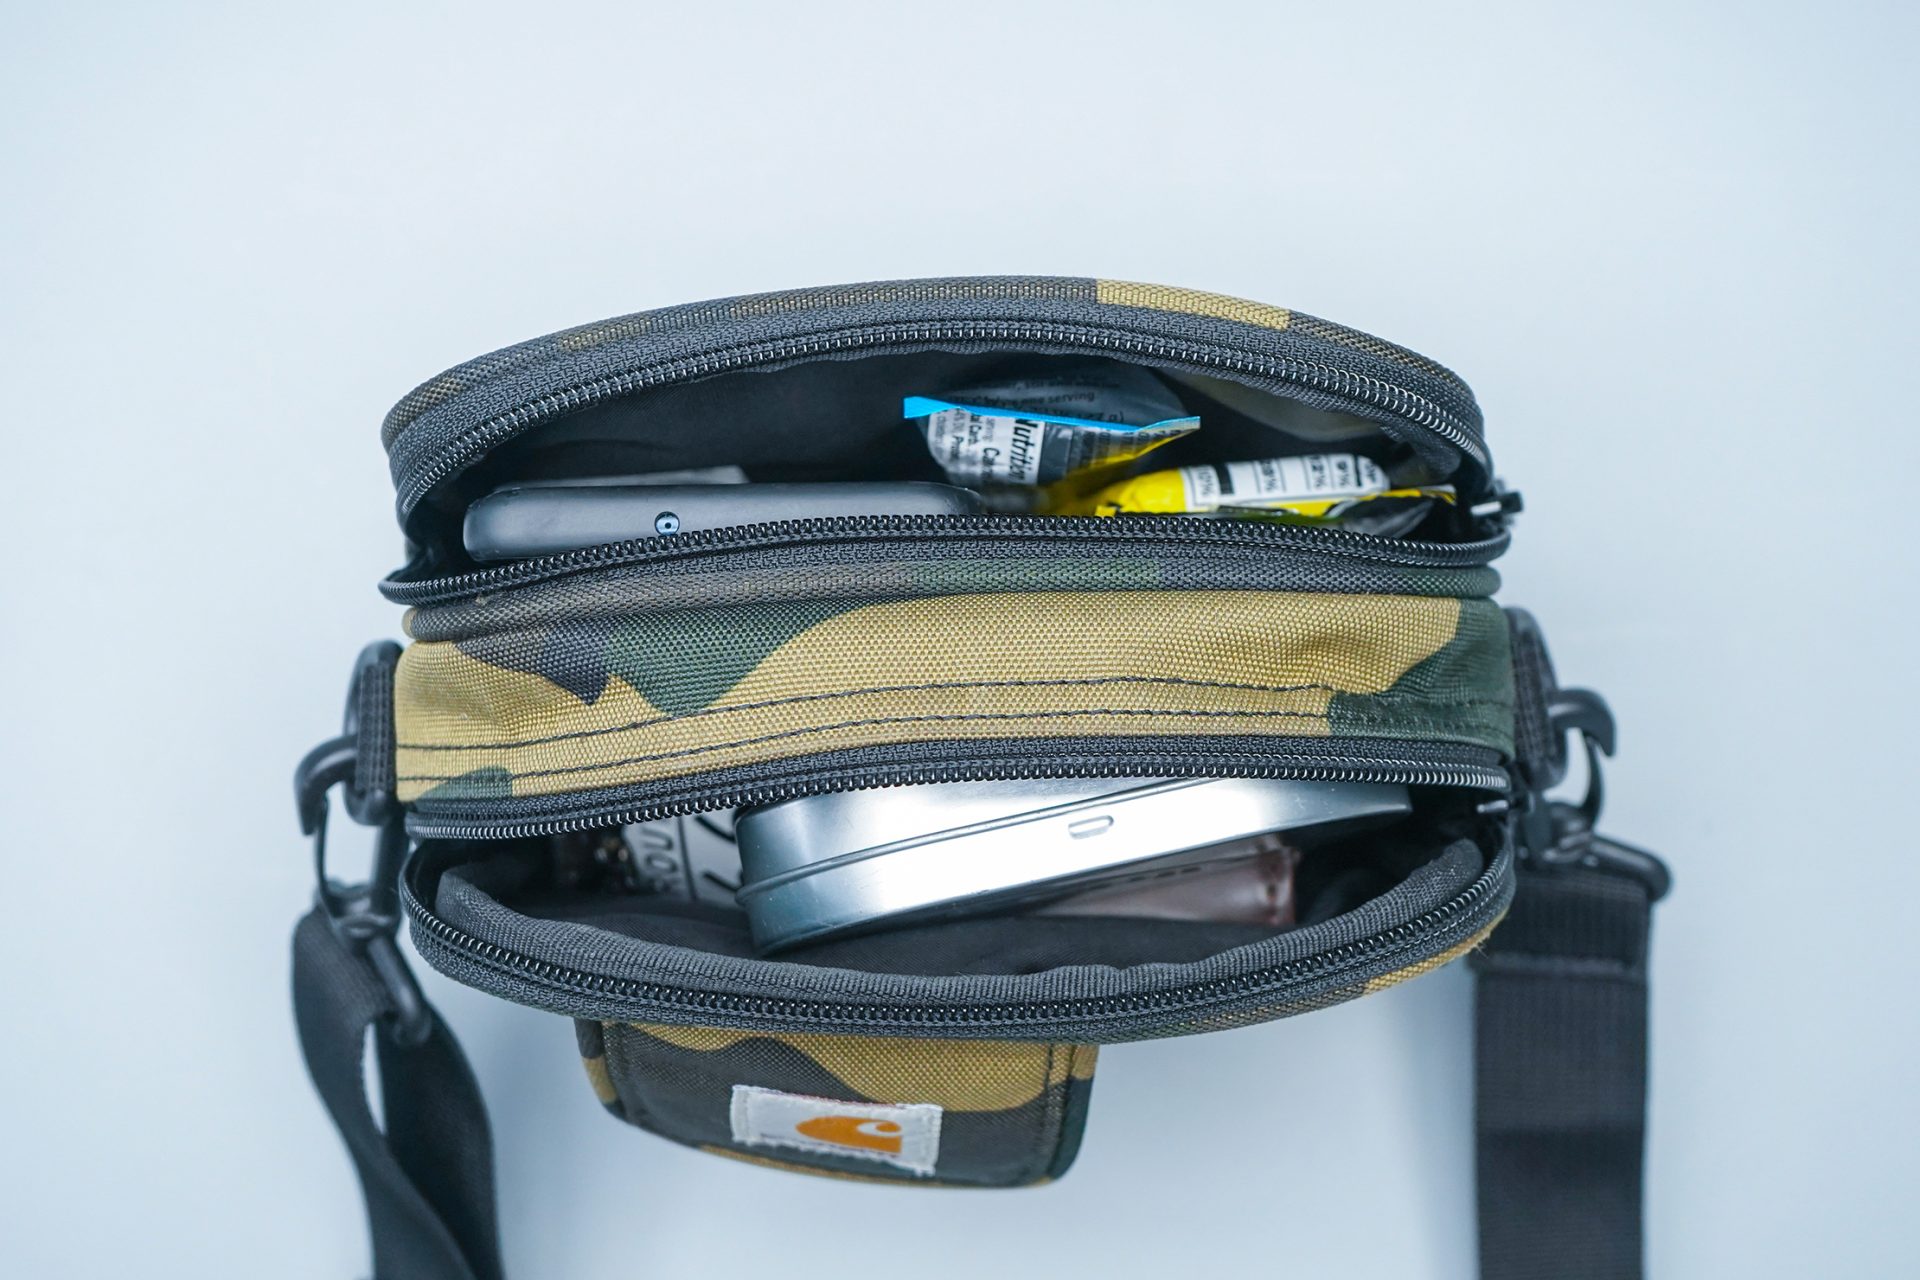 Carhartt WIP Essentials Bag main compartments open